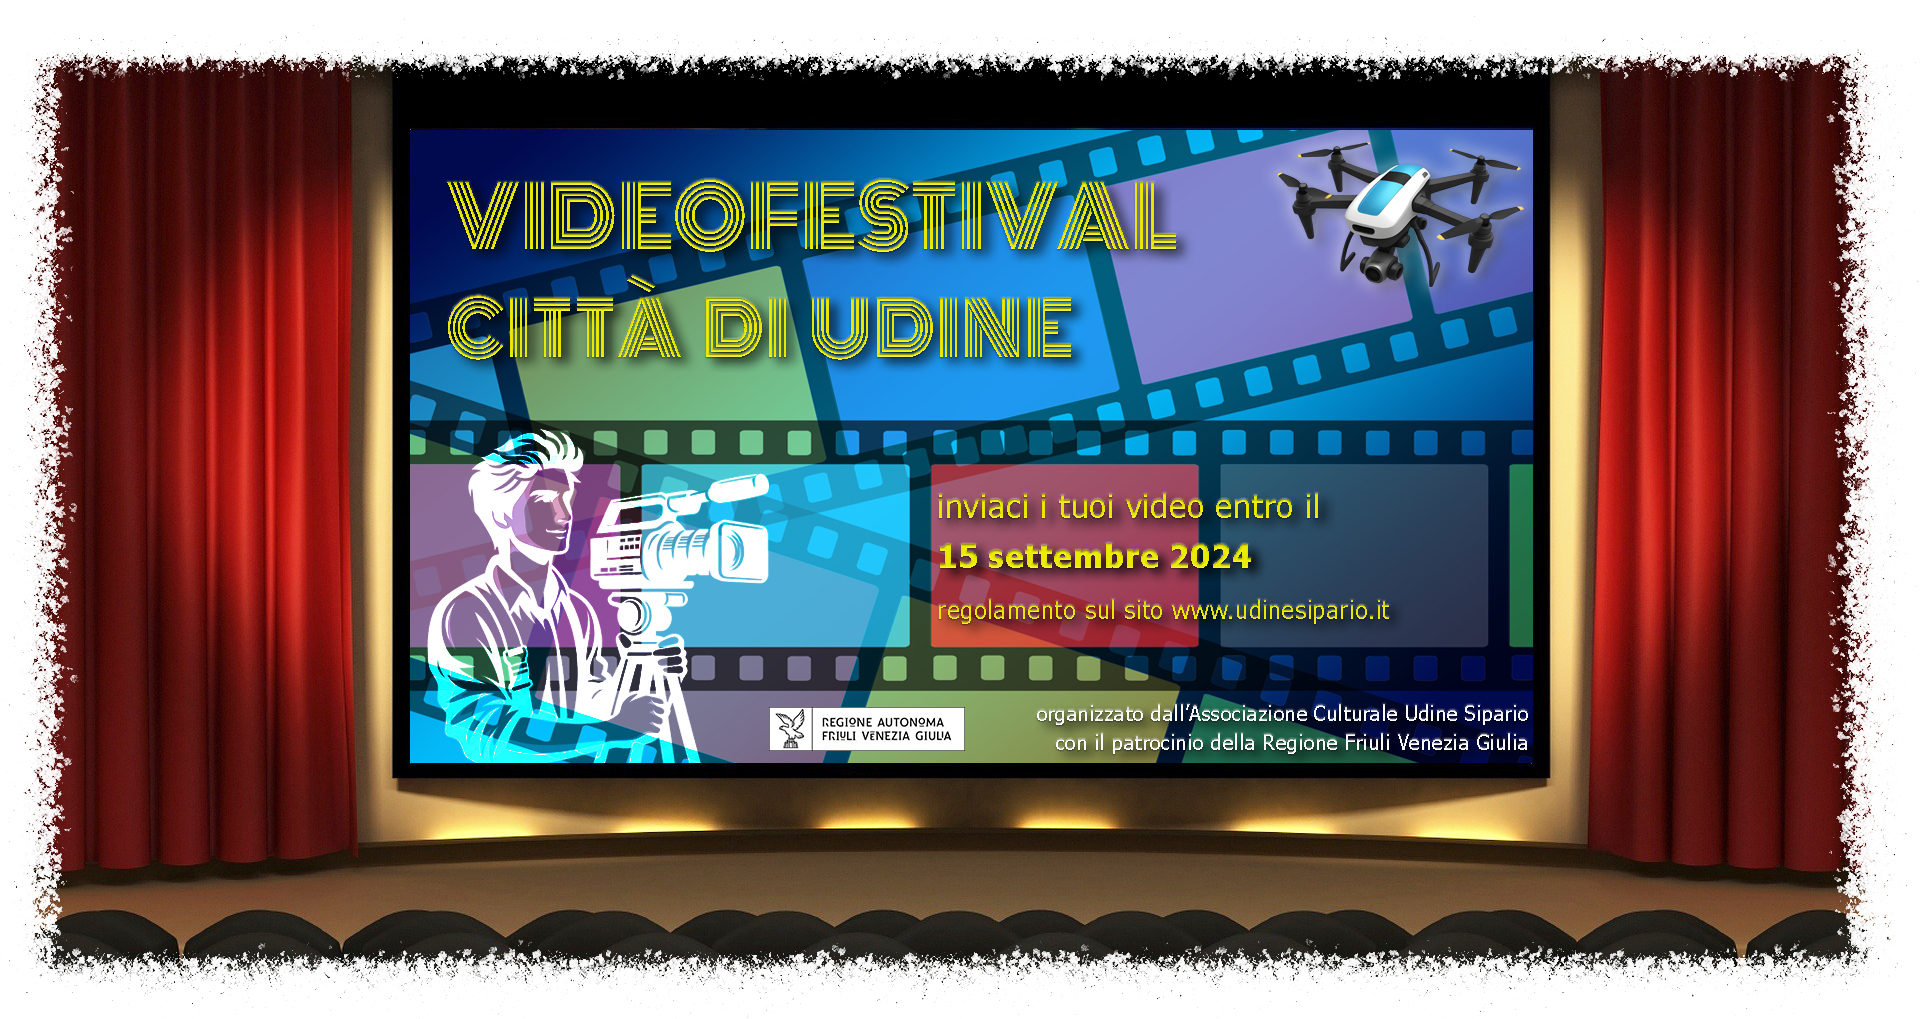 VideoFestival "Città di Udine" 